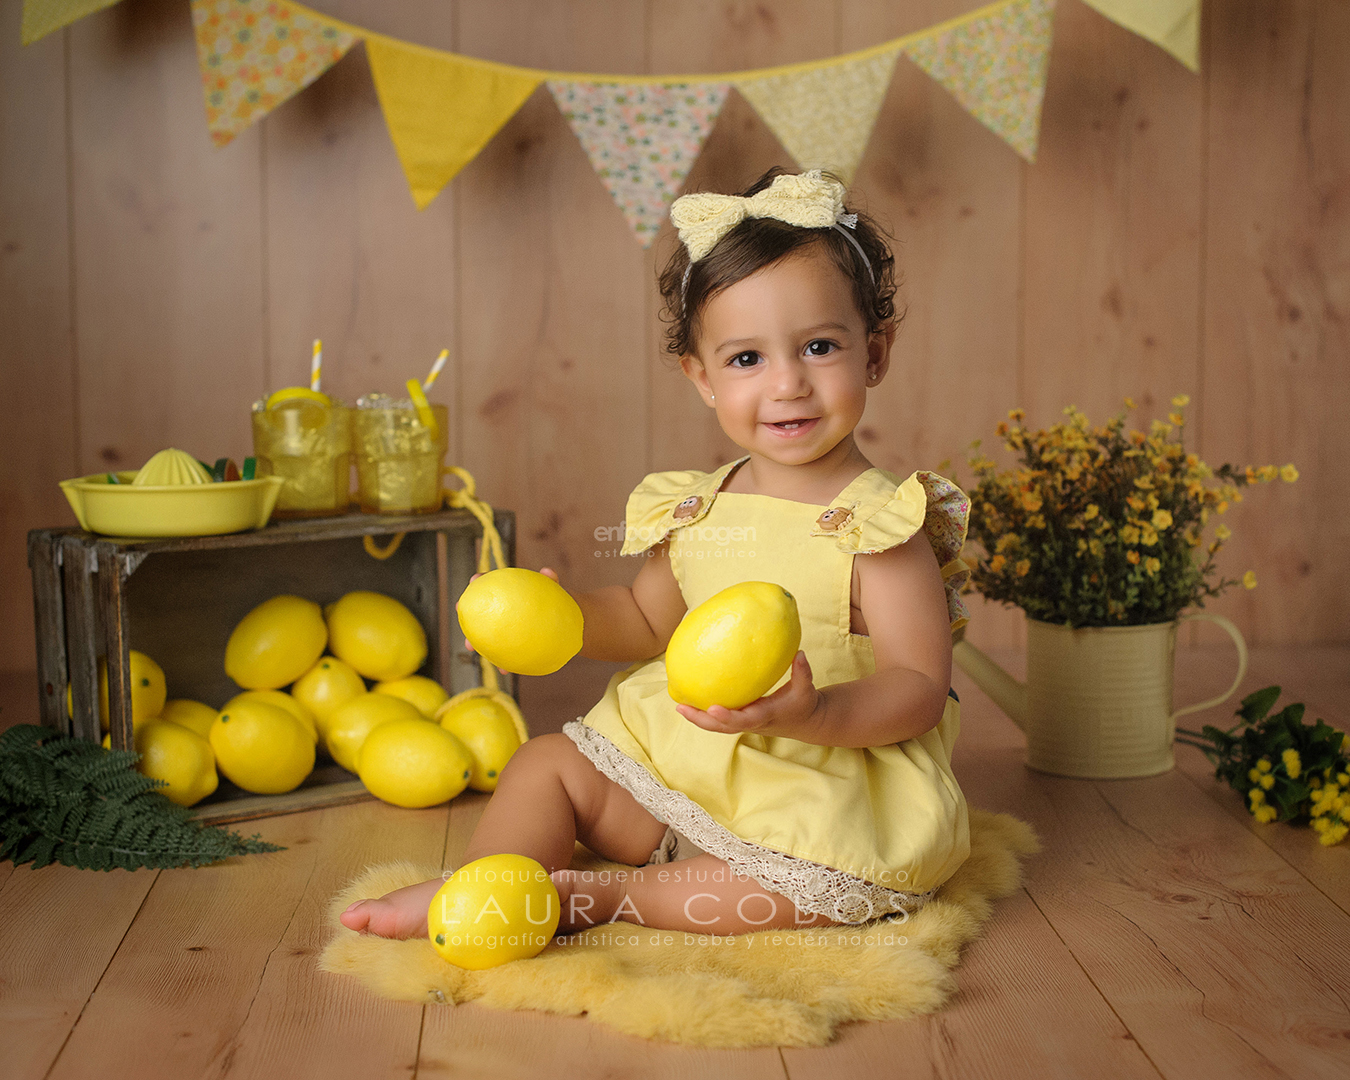 fotografía de bebé, fotografía infantil, sesion de verano, verano, limones, sesion infantil, sesion de fotos veraniega